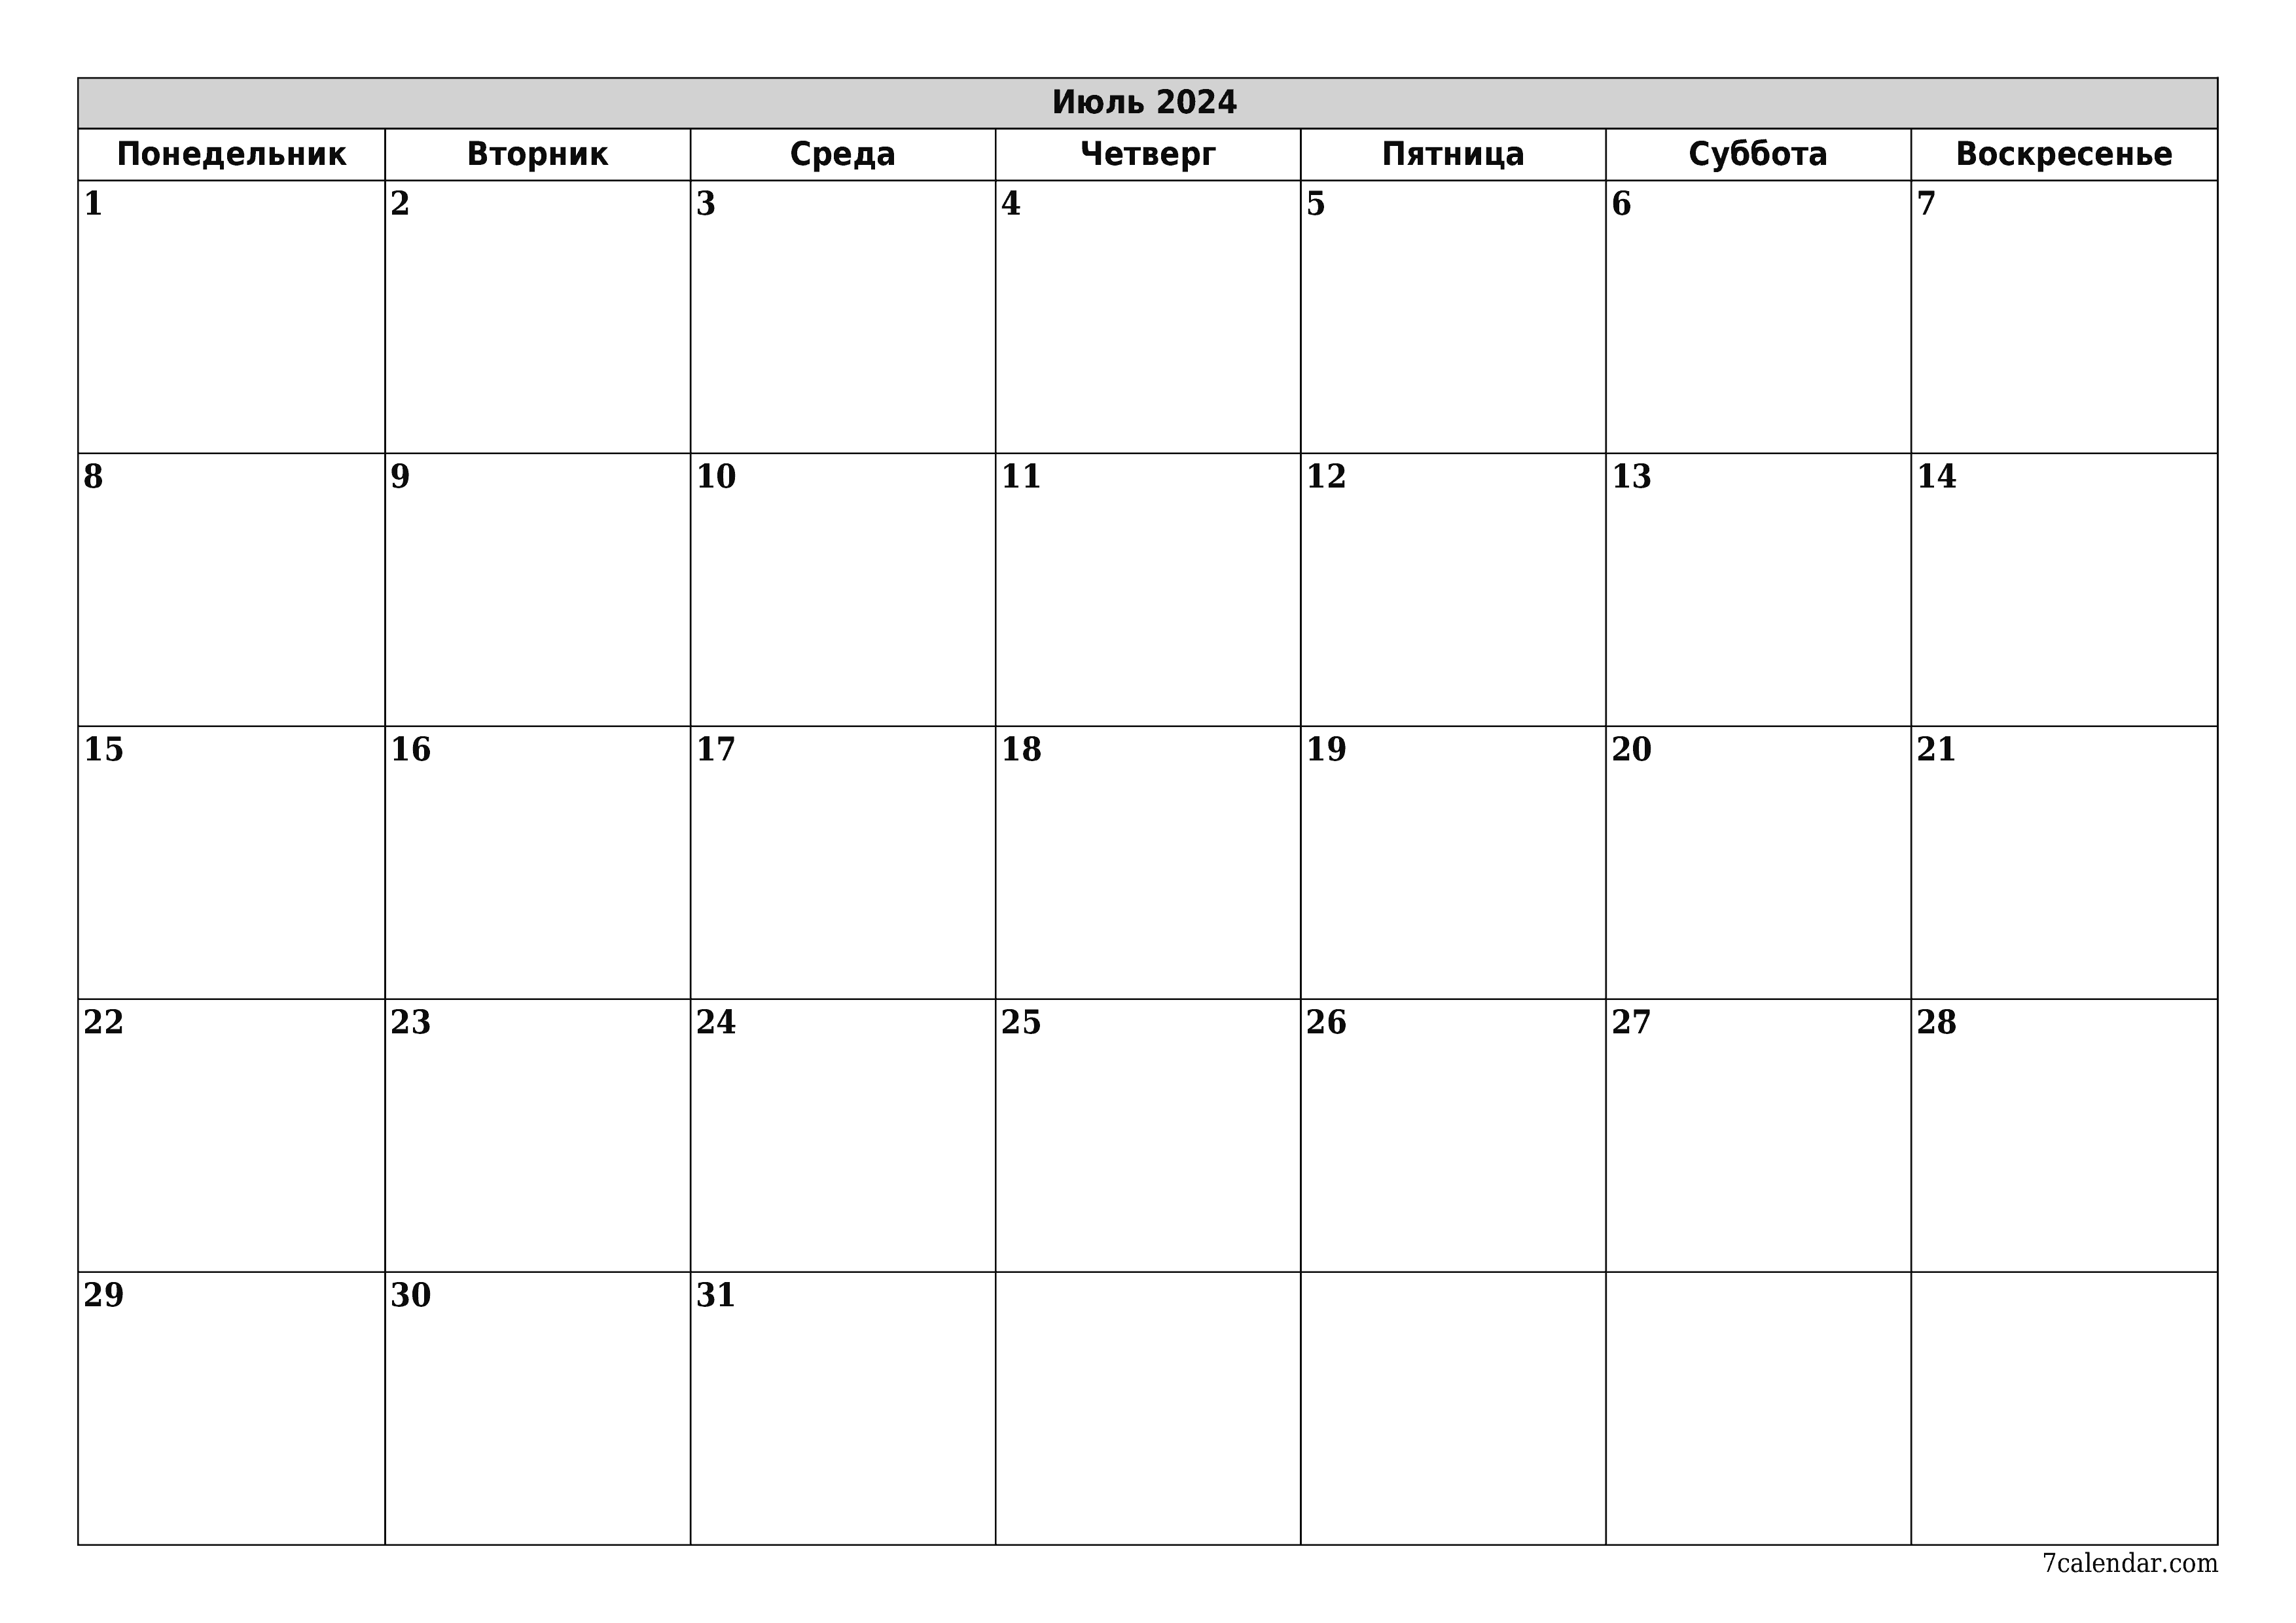 Календари и планеры для печати на месяц Июль 2024 A4, A3 в PDF и PNG -  7calendar